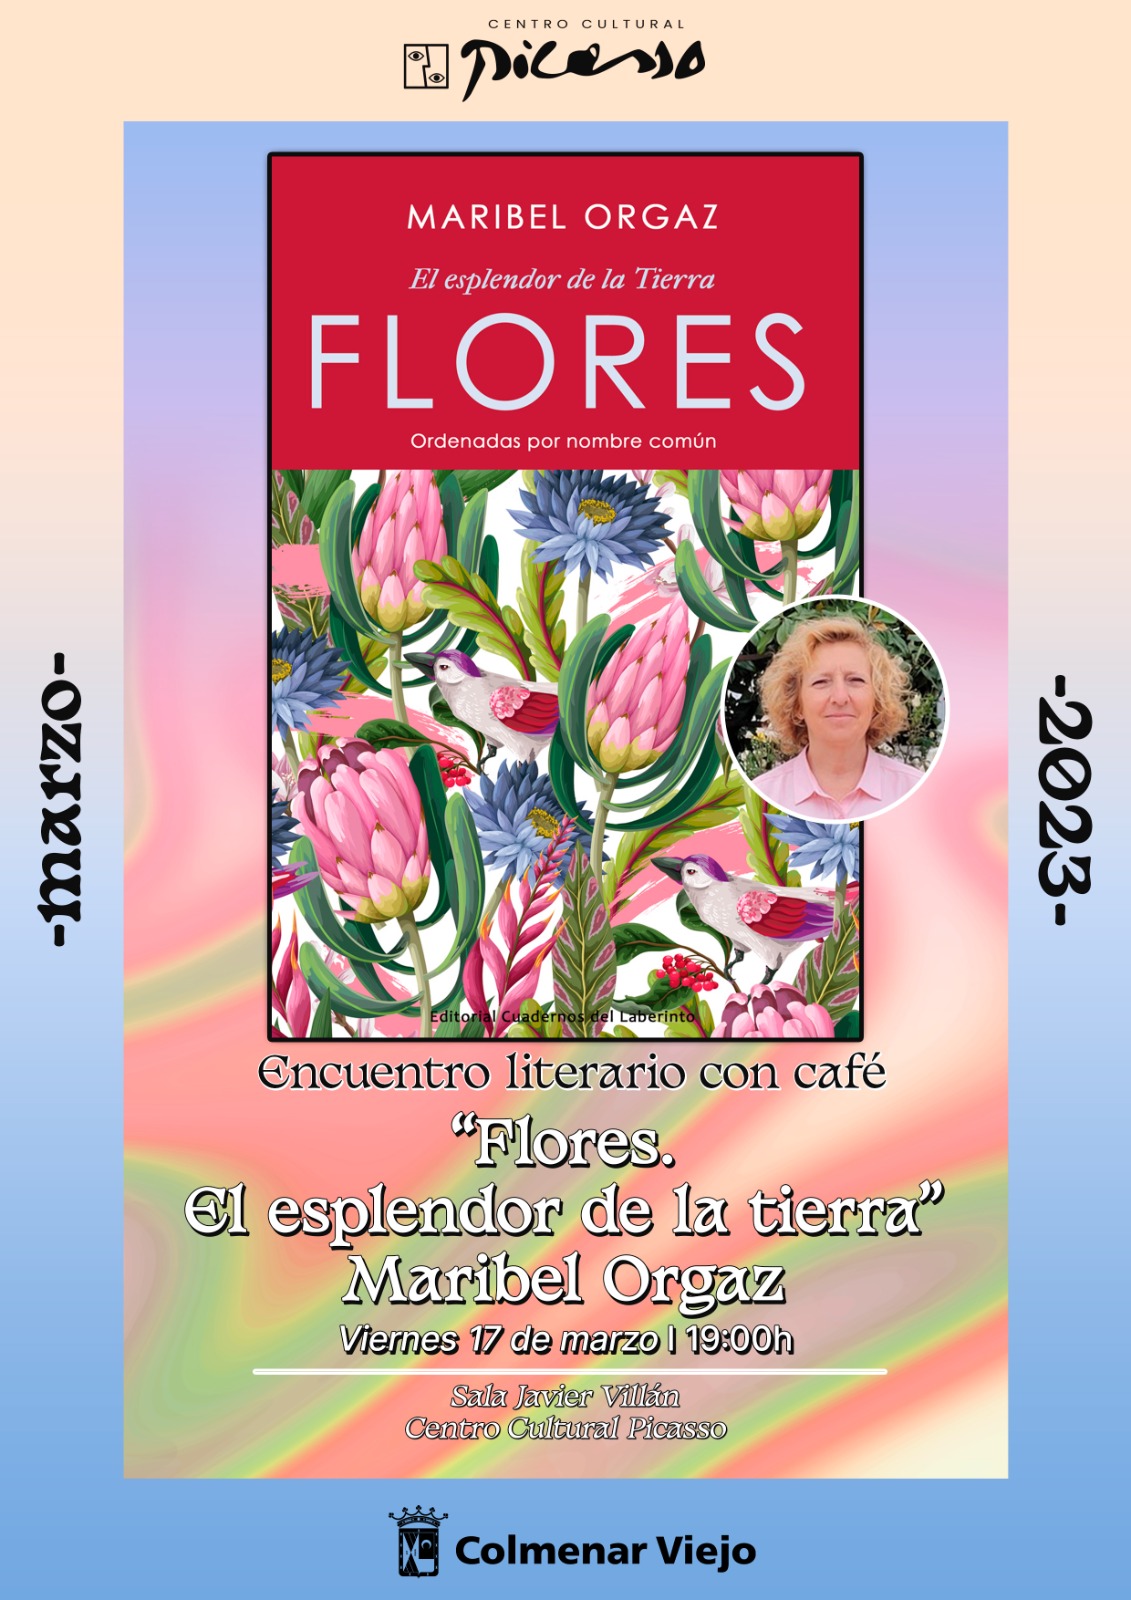 Encuentro Literario Café Maribel Orgaz